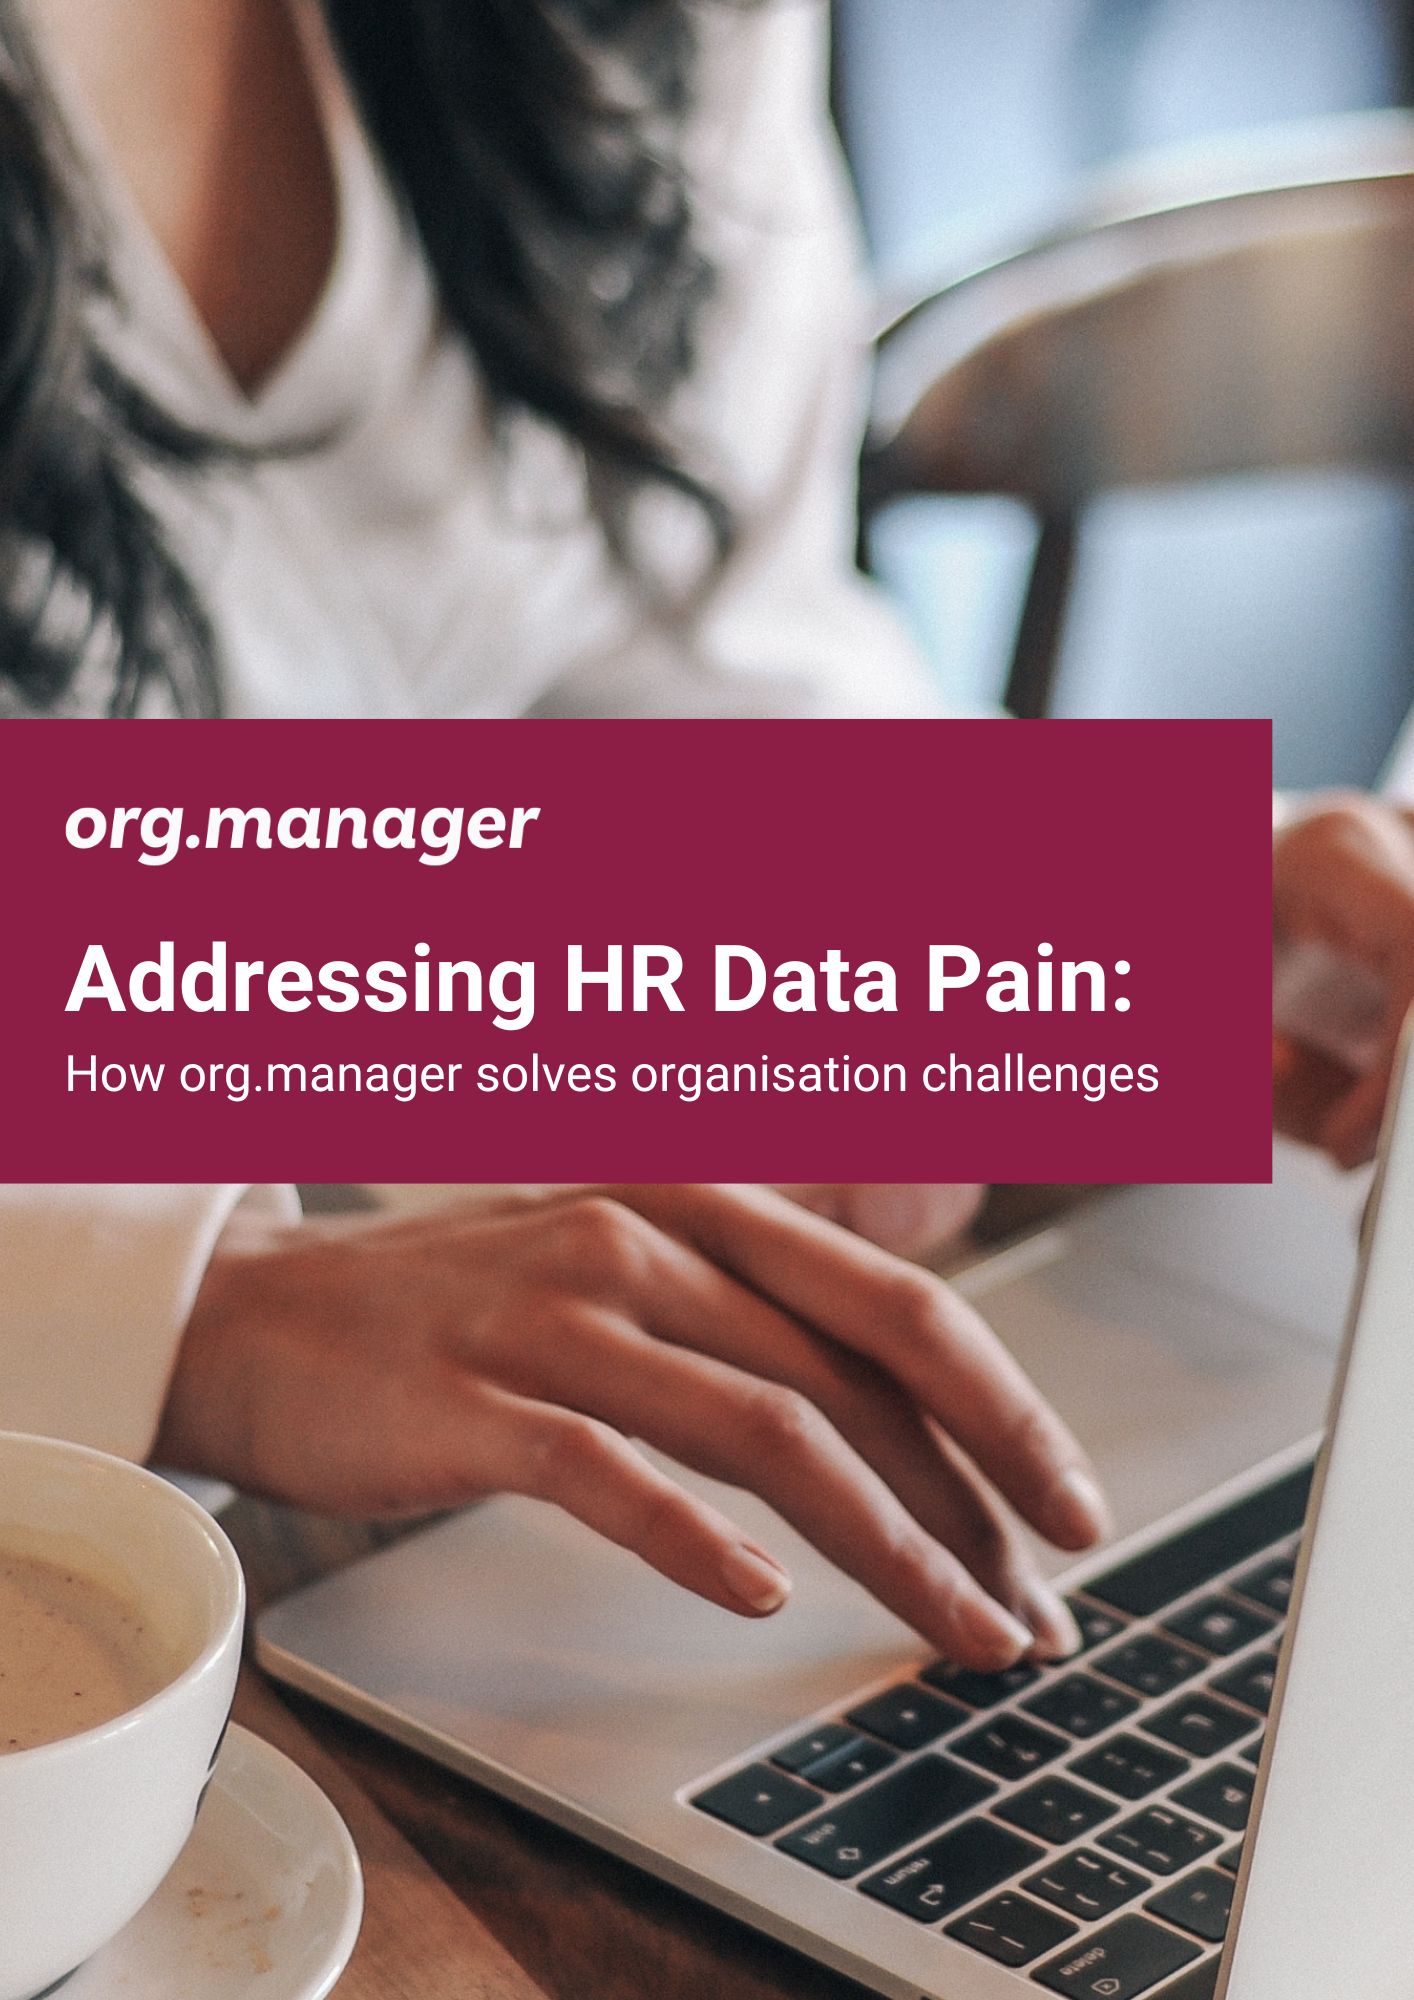 HR Data pain whitepaper cover